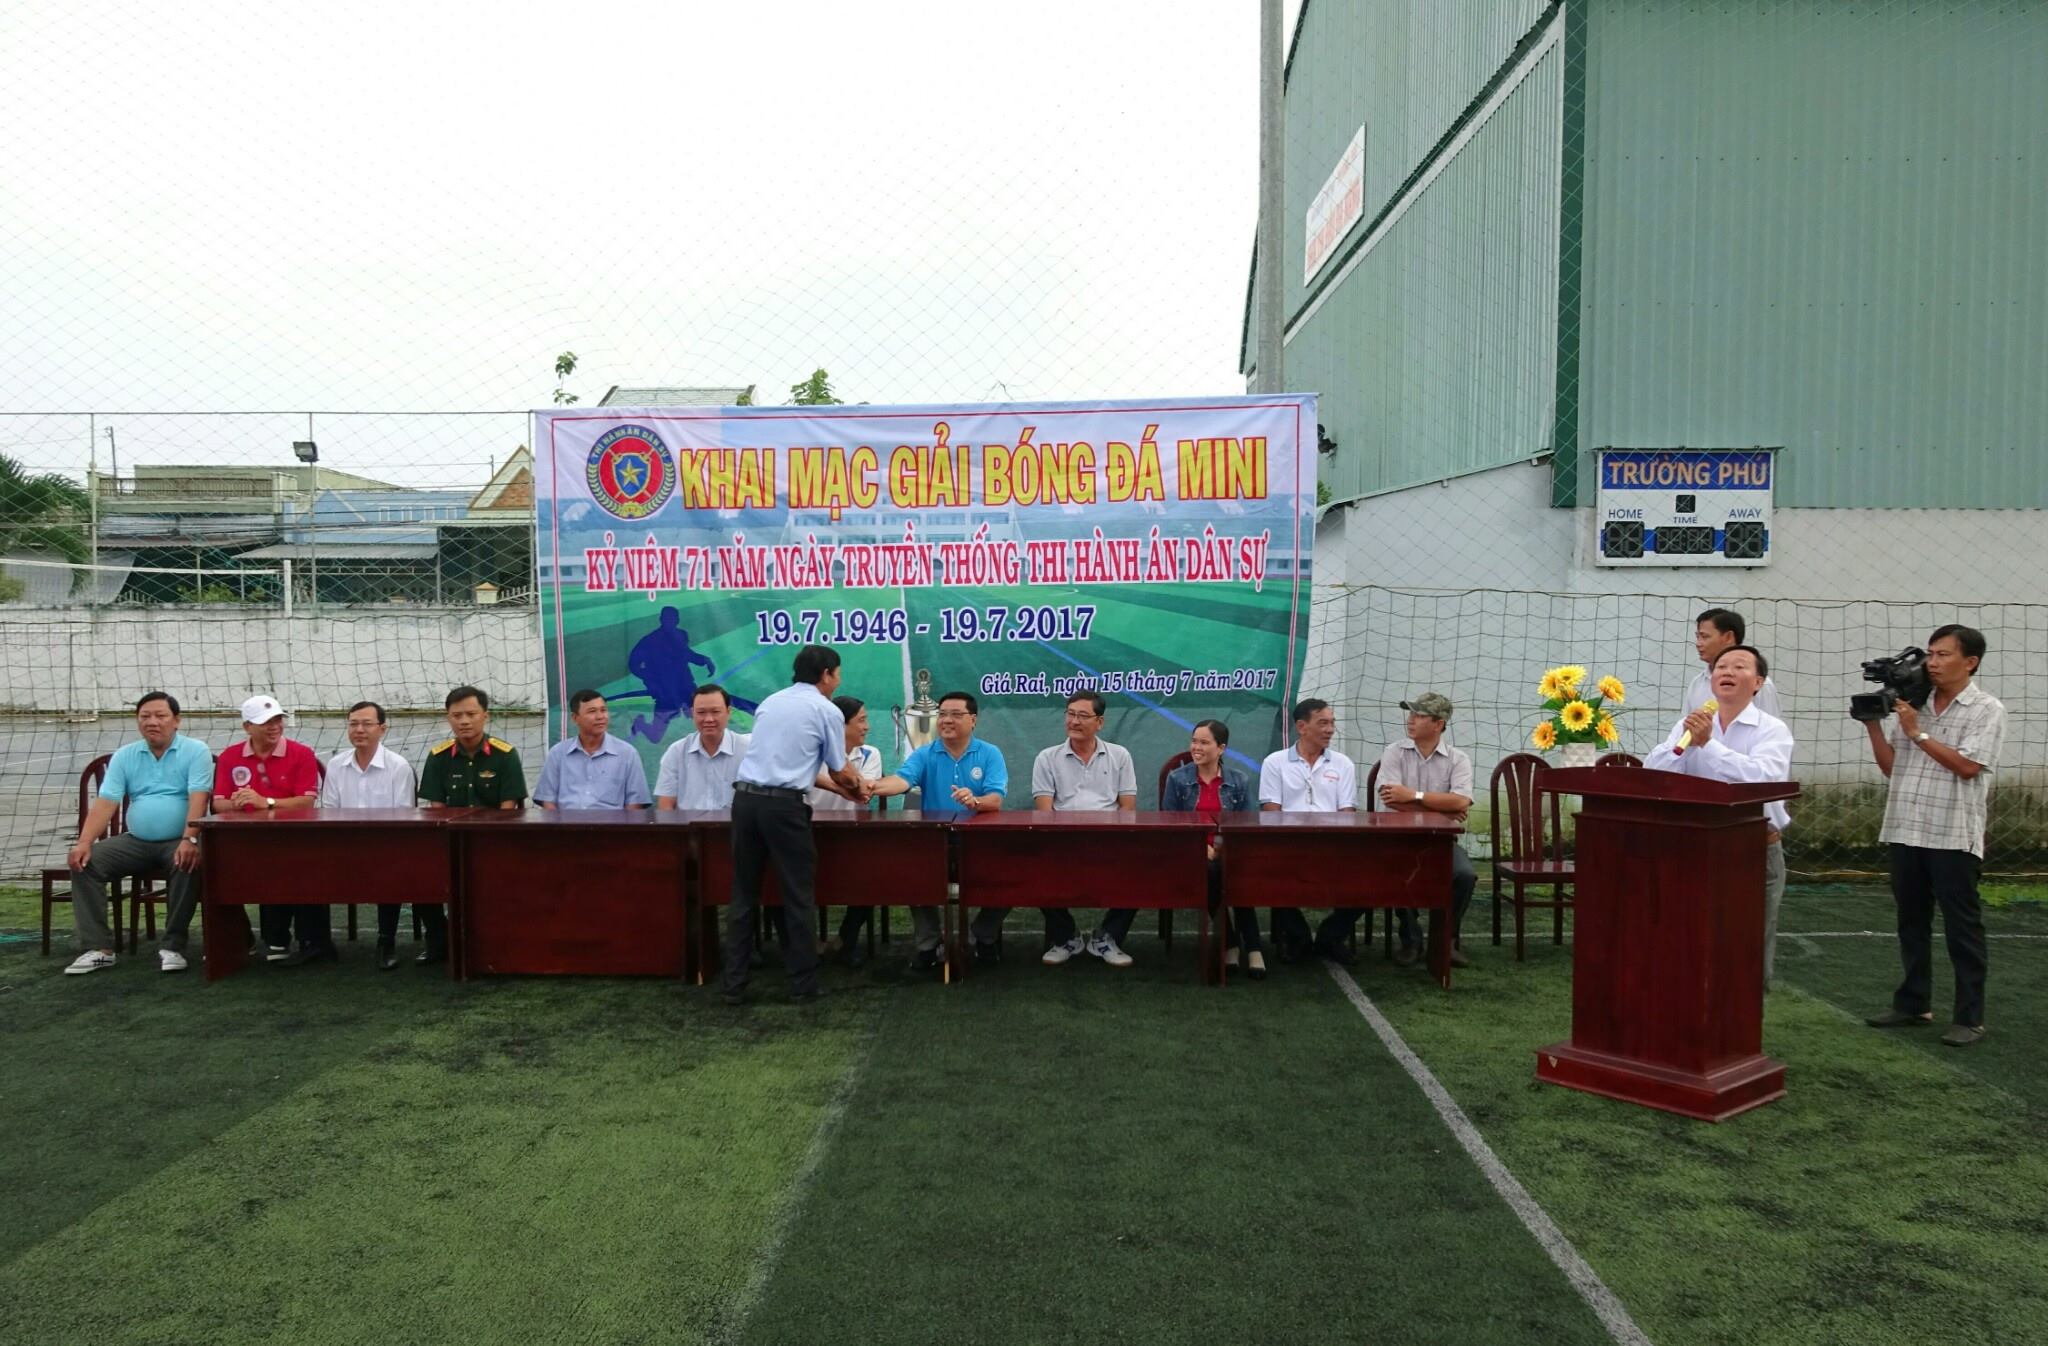 Ngành Thi hành án dân sự tỉnh Bạc Liêu tổ chức Giải bóng đá Mini nam nhân dịp Kỷ niệm 71 năm Ngày truyền thống Ngành thi hành án dân sự (19/7/1946 - 19/7/2017)